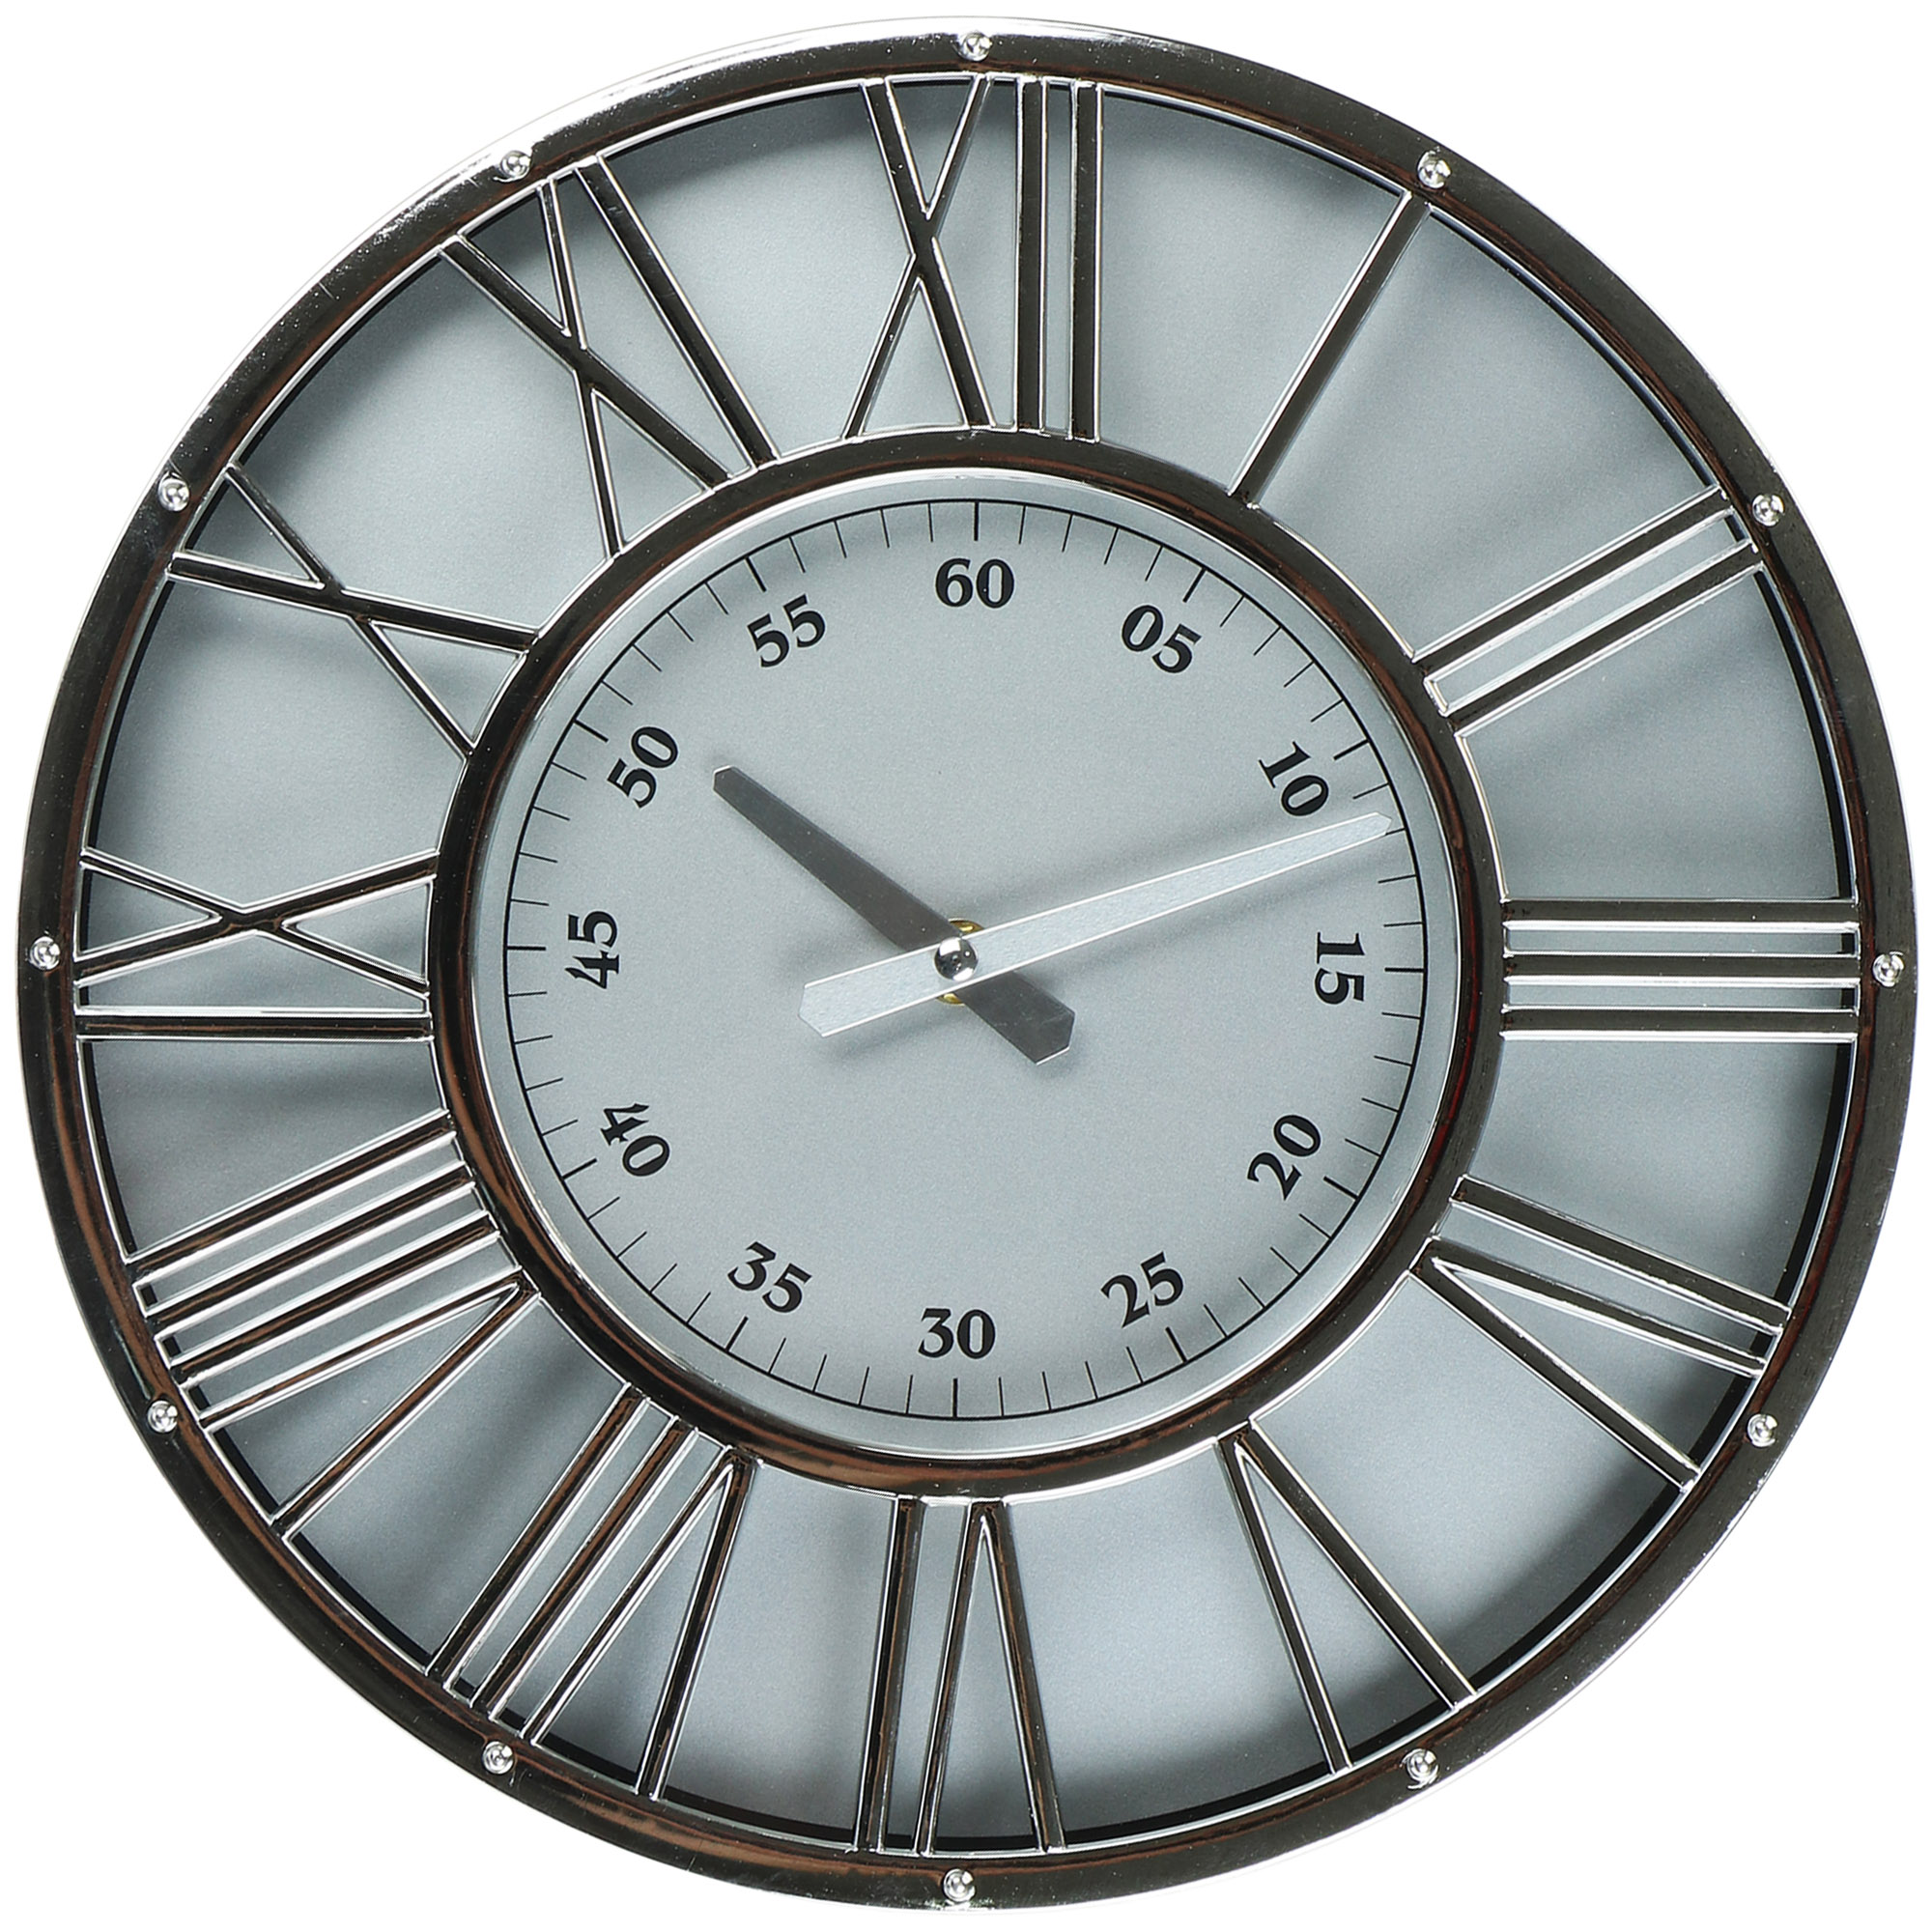 Часы настенные Kanglijia Clock серебряные 30,4х4,1х30,4 см часы электронные настольные будильник термометр с проекцией зеленые цифры 19 2х6 5см